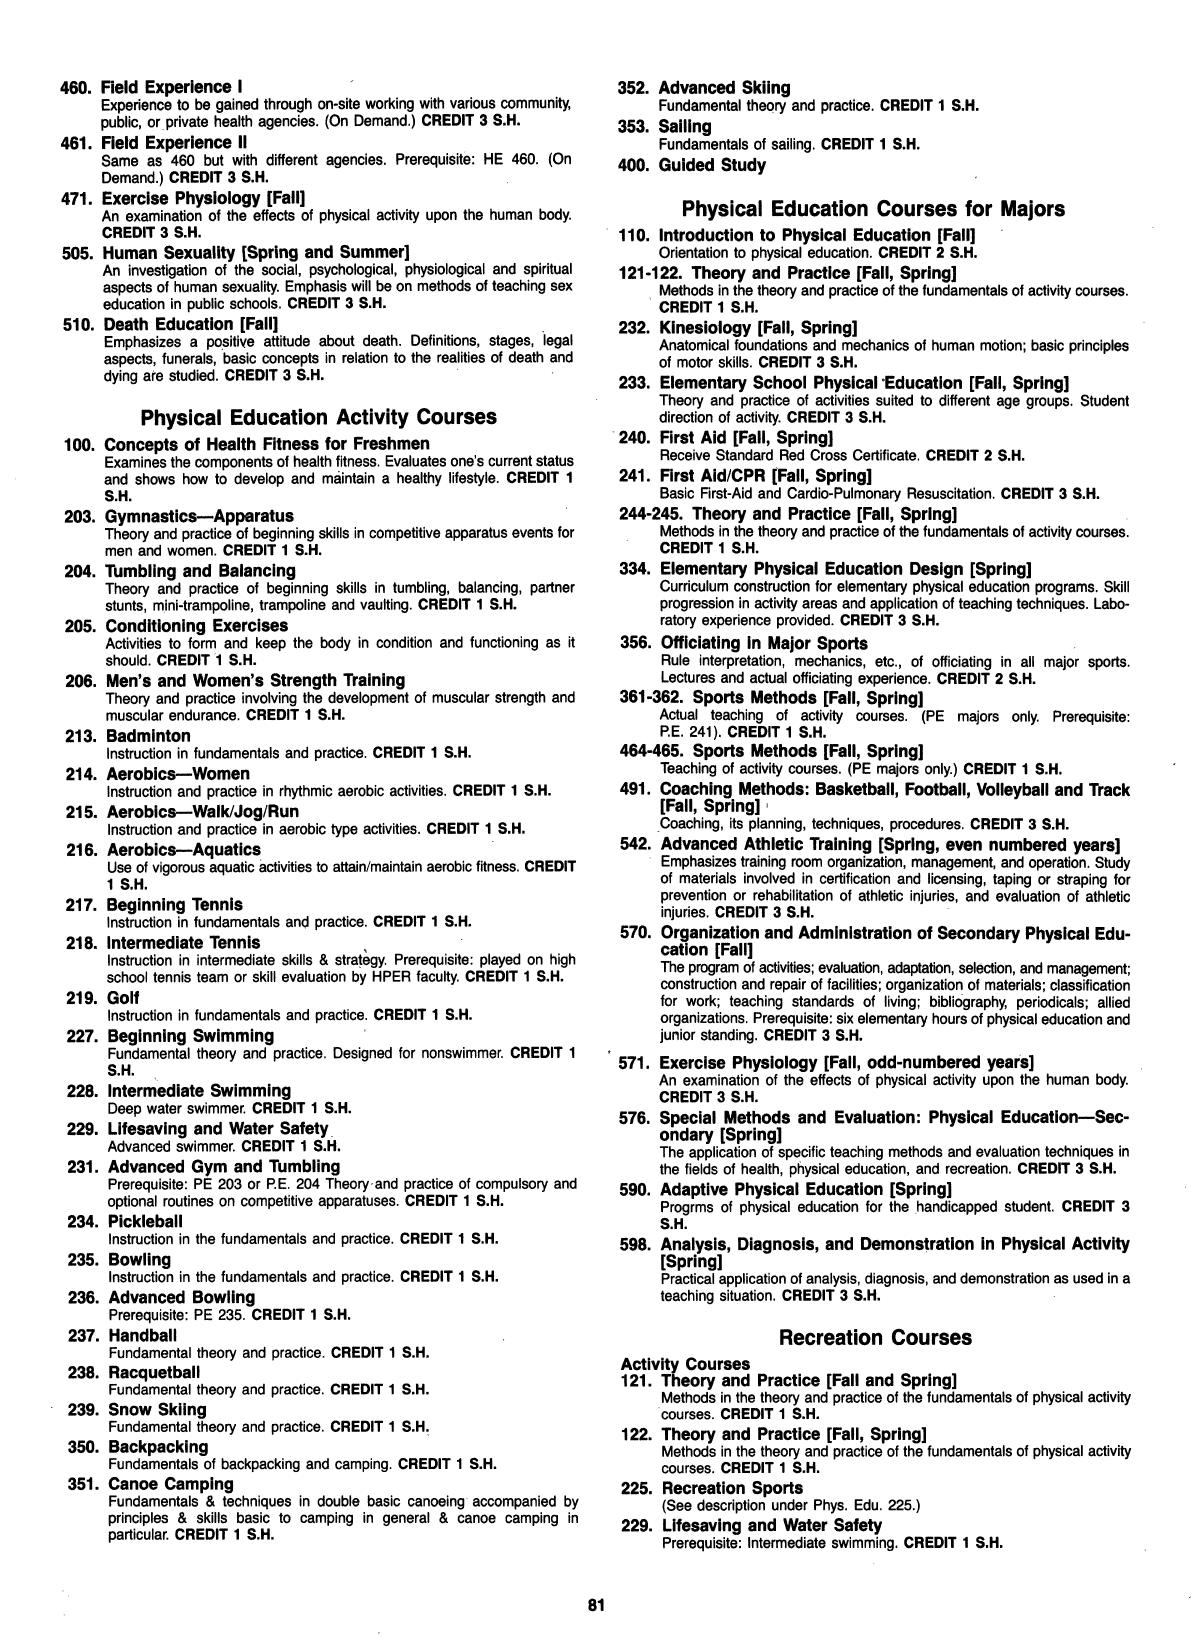 Catalog of Abilene Christian University, 1984-1985
                                                
                                                    81
                                                